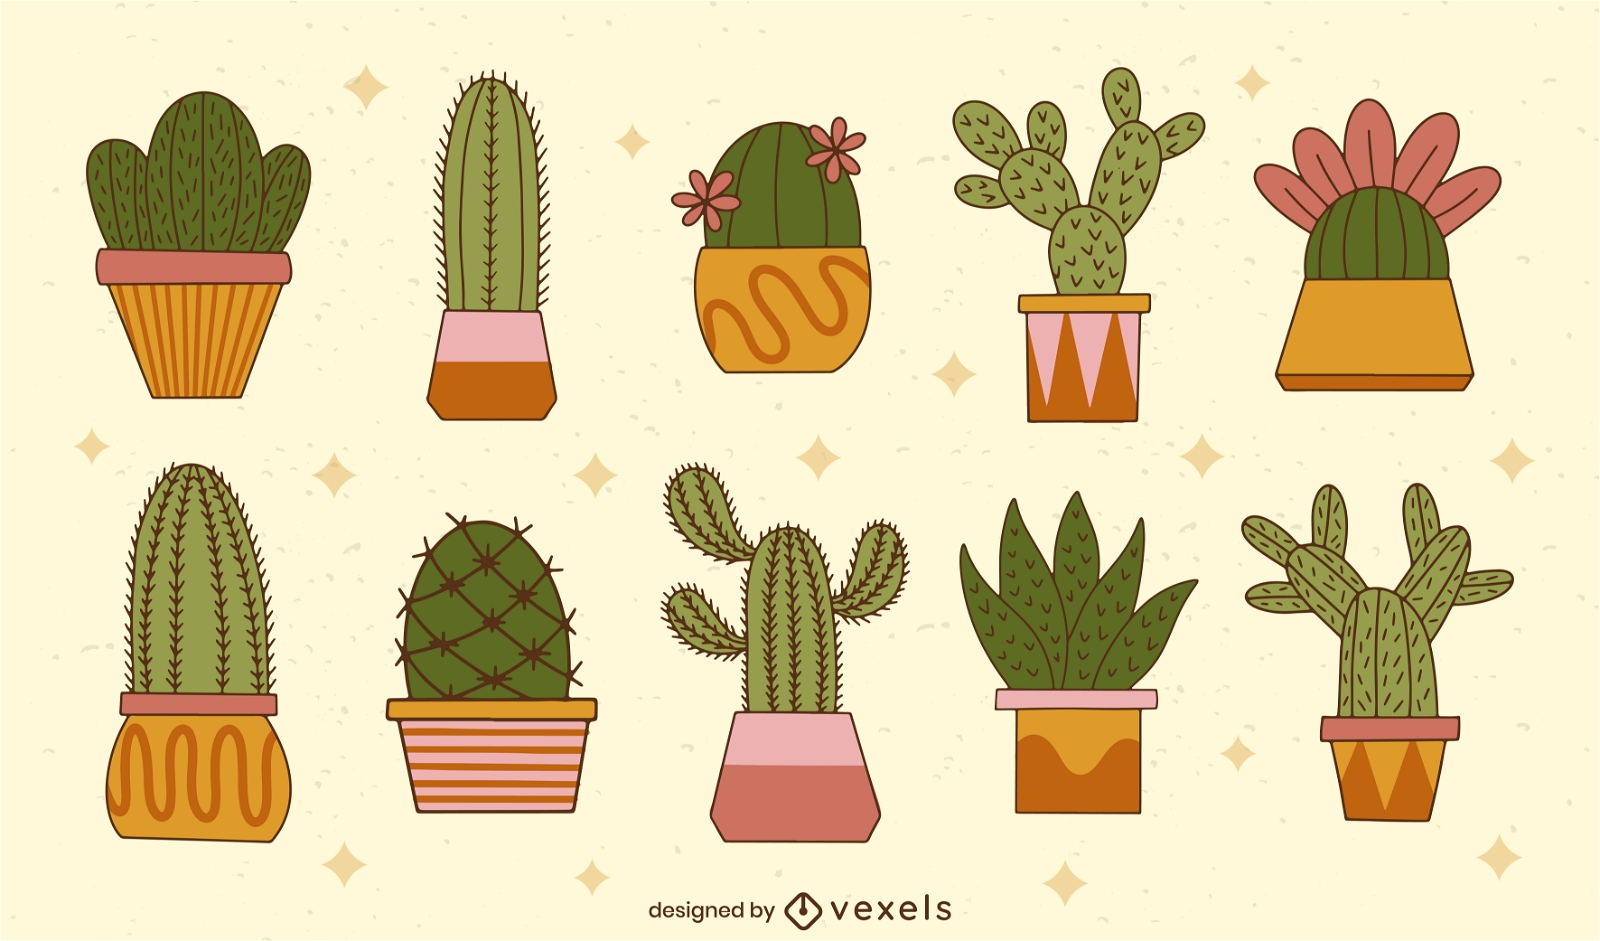 Cute cactus plants in pots nature set